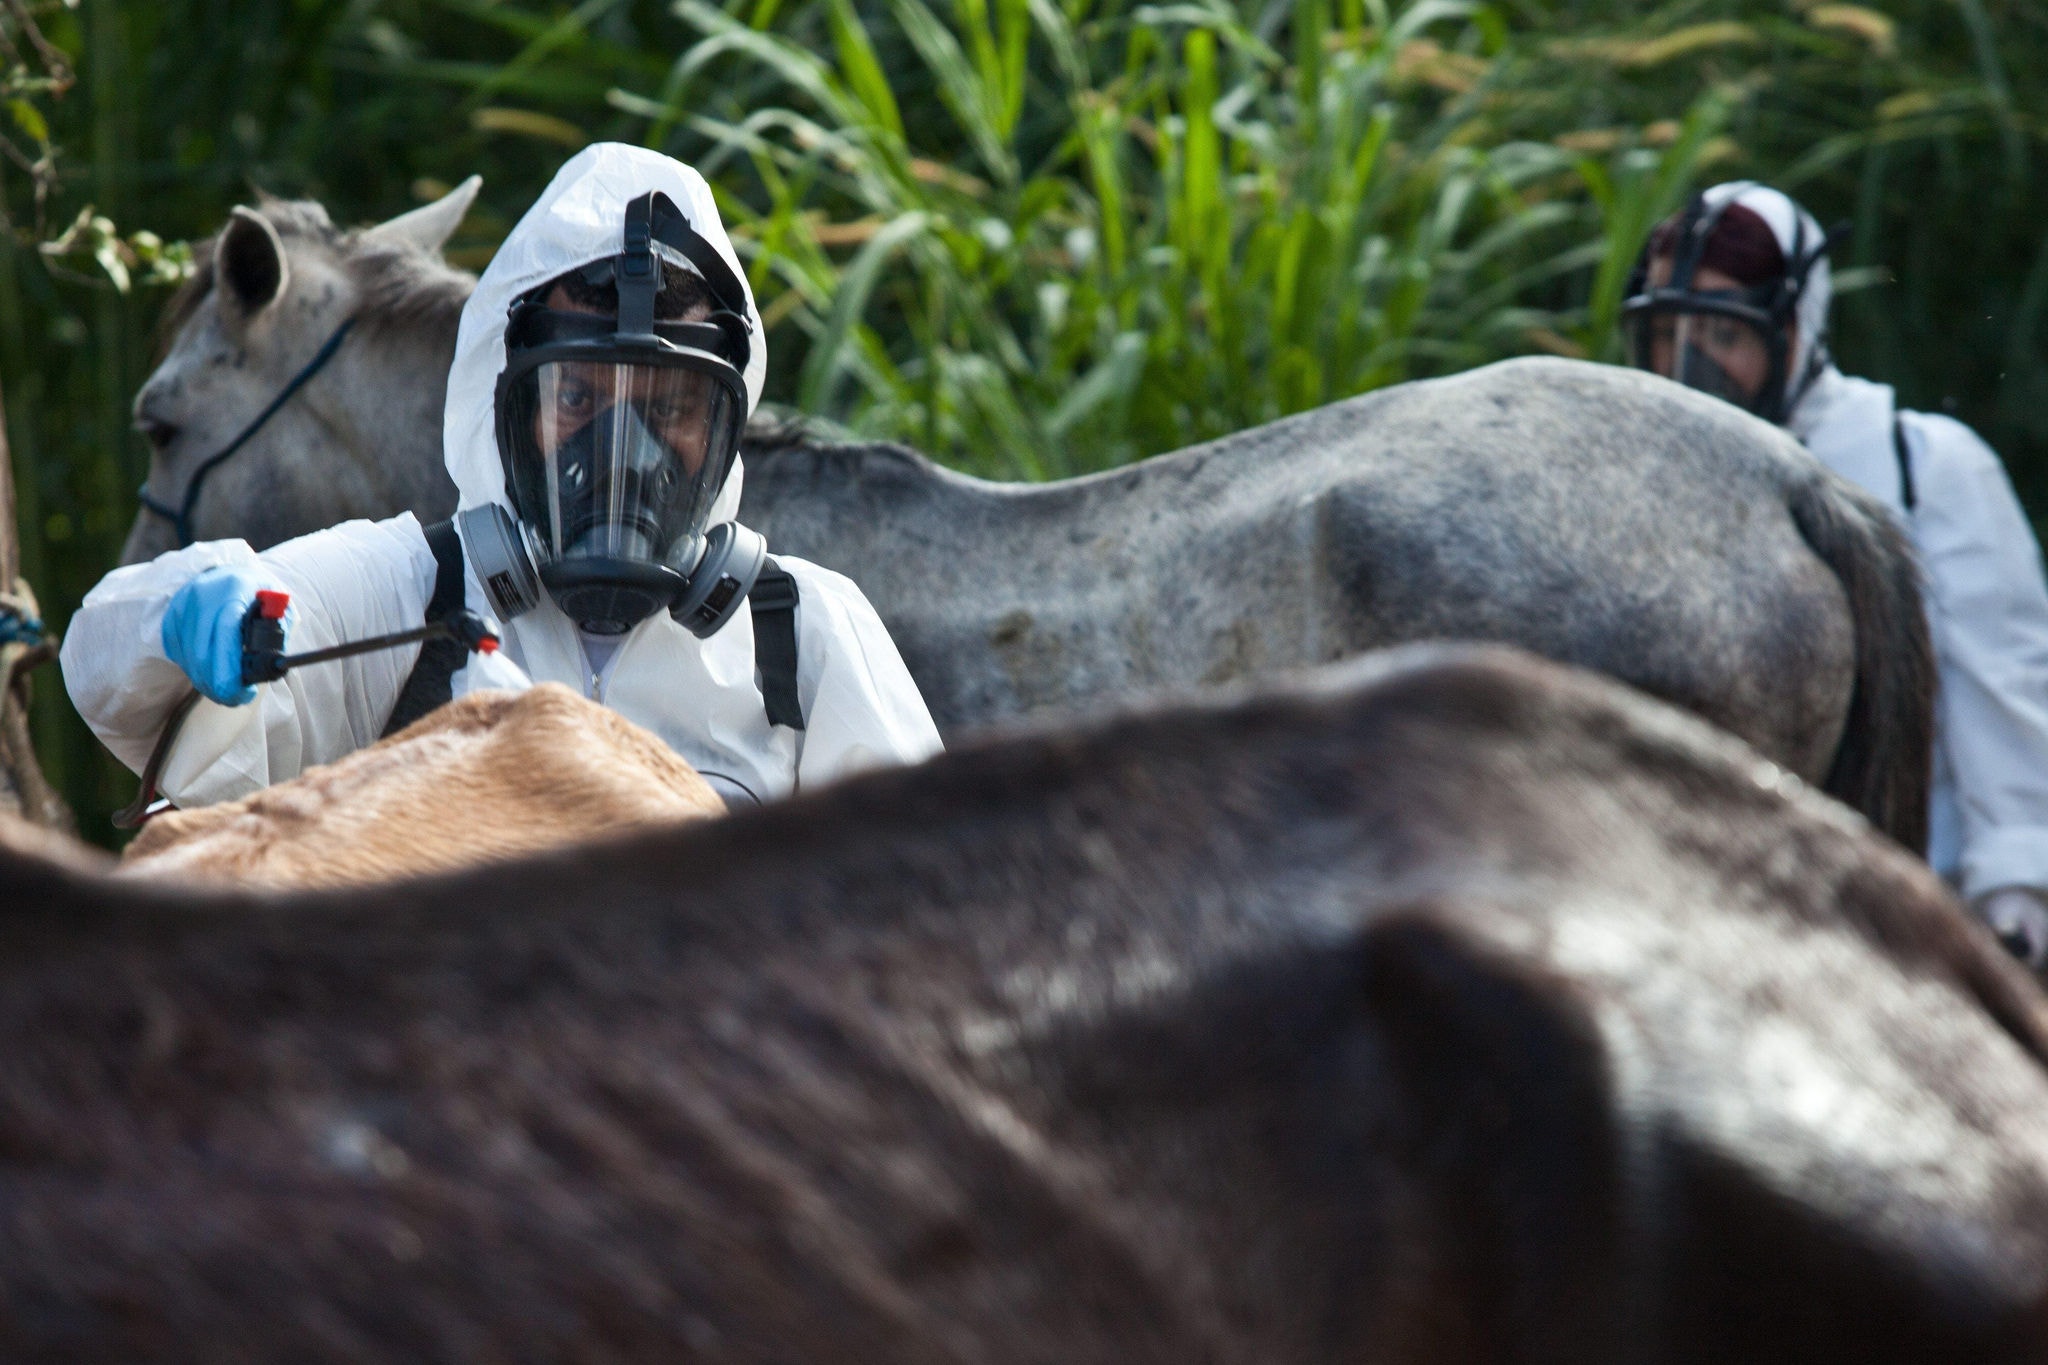 Cavalos estão sendo recolhidos pela Prefeitura de Contagem e recebendo banho contra carrapato transmissor da febre maculosa.